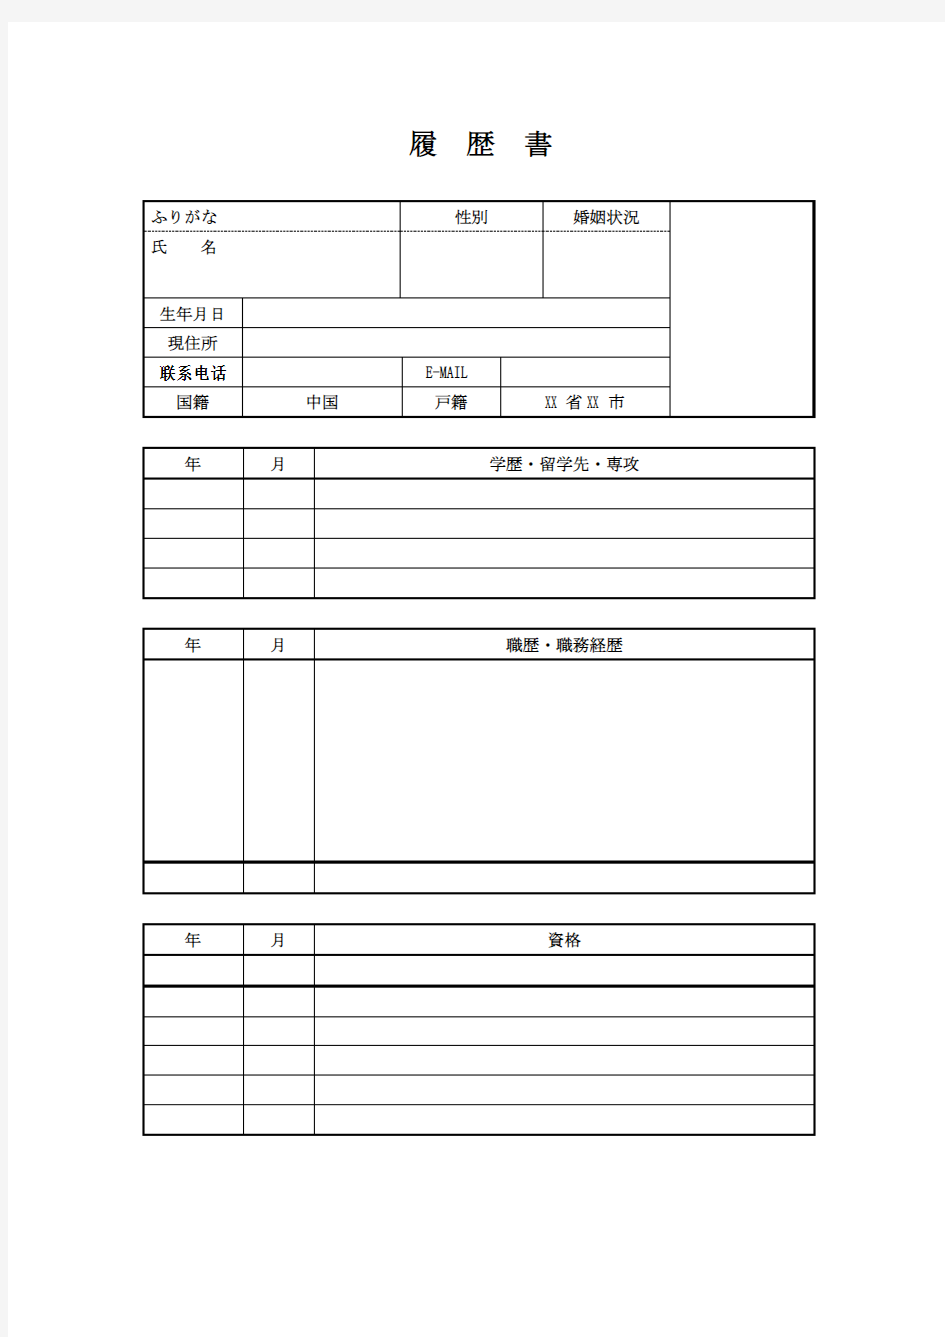 【求职简历】日本语面接履歴书-日语简历模板-